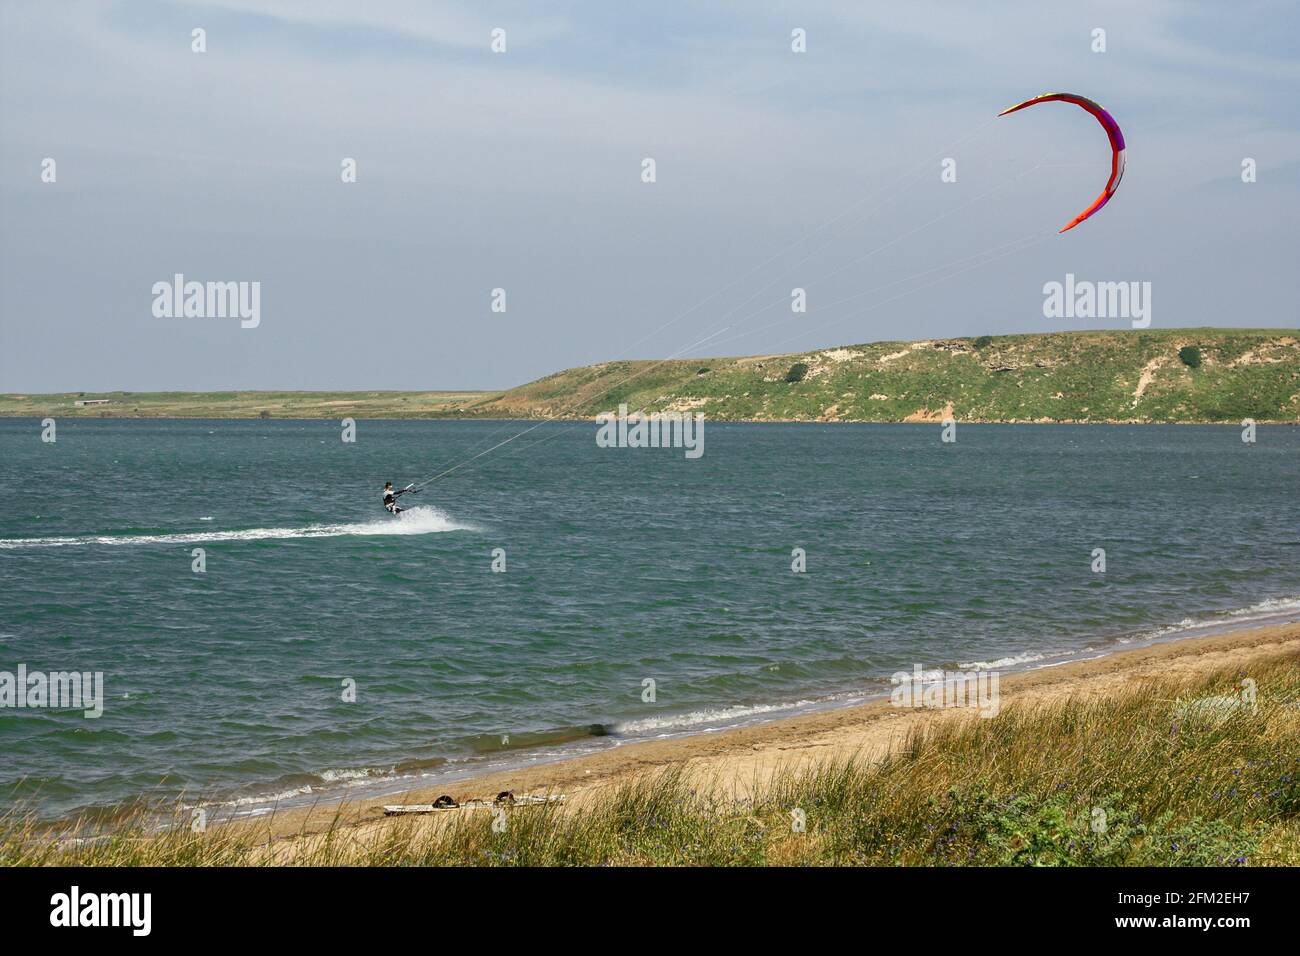 Homme kite surf (kite-board) dans le lac de sel (Tuz golu) près de la plage de Kefalos dans l'île de Gokceada (Imbros), Canakkale, Turquie Banque D'Images